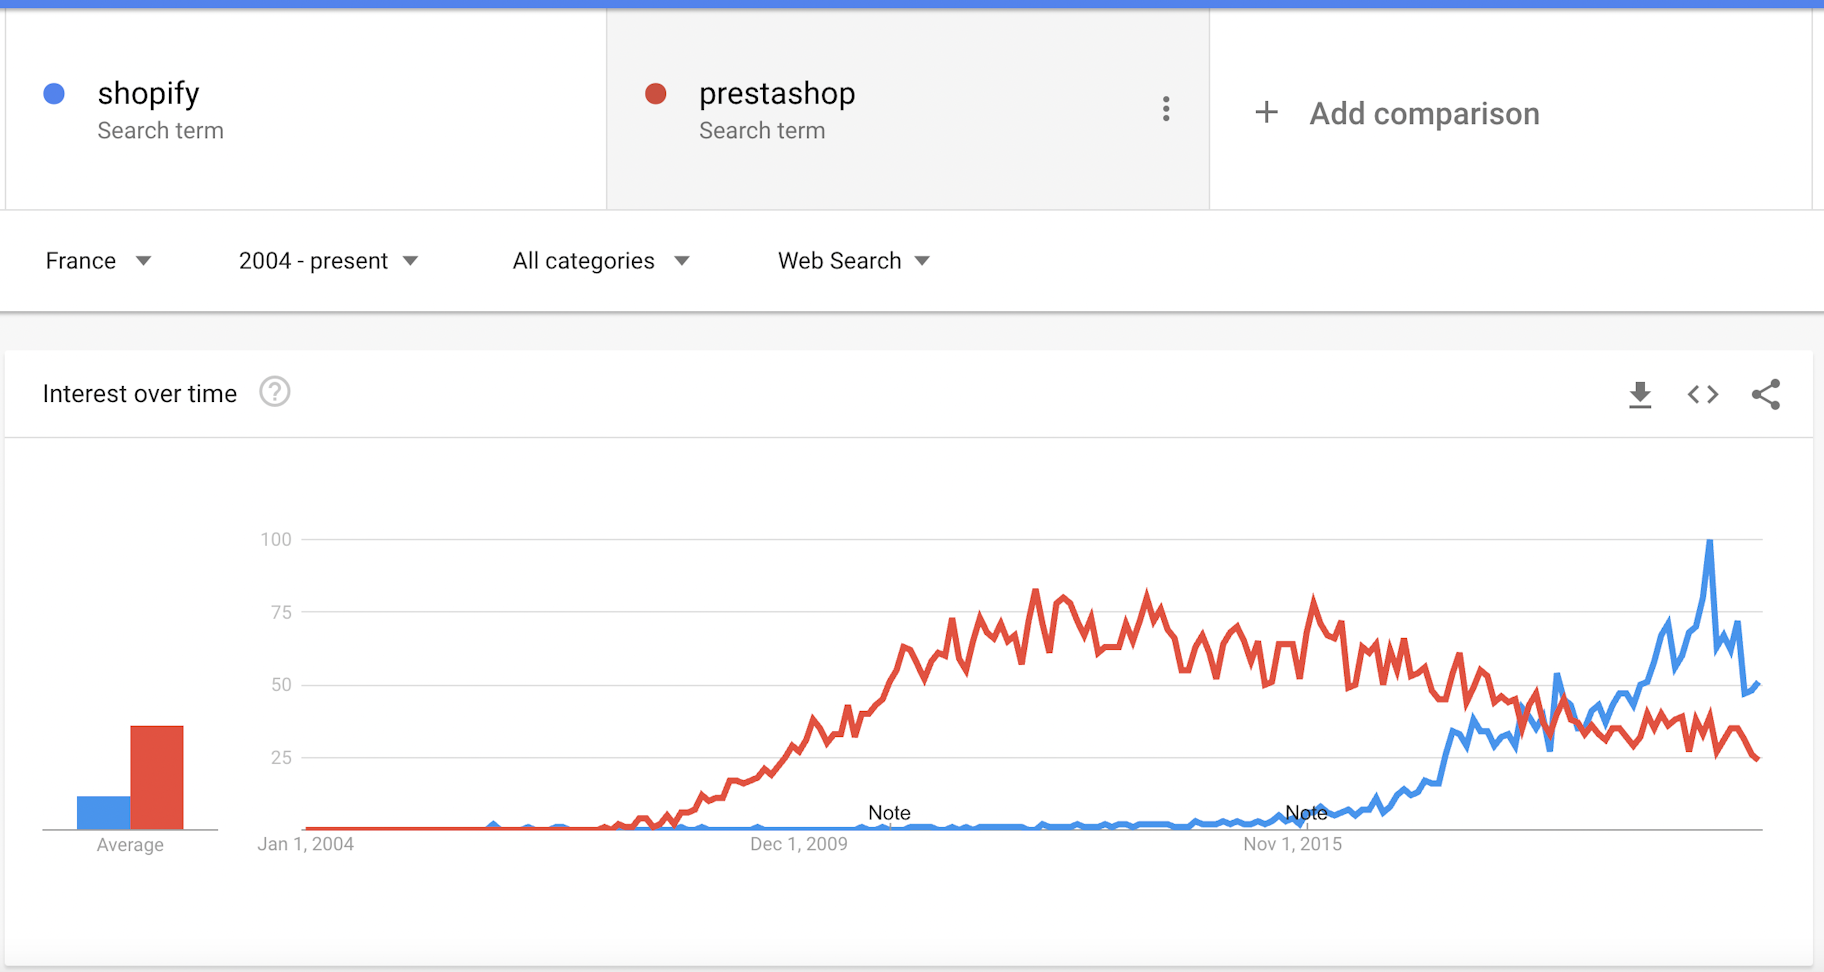 shopify vs prestashop google trends